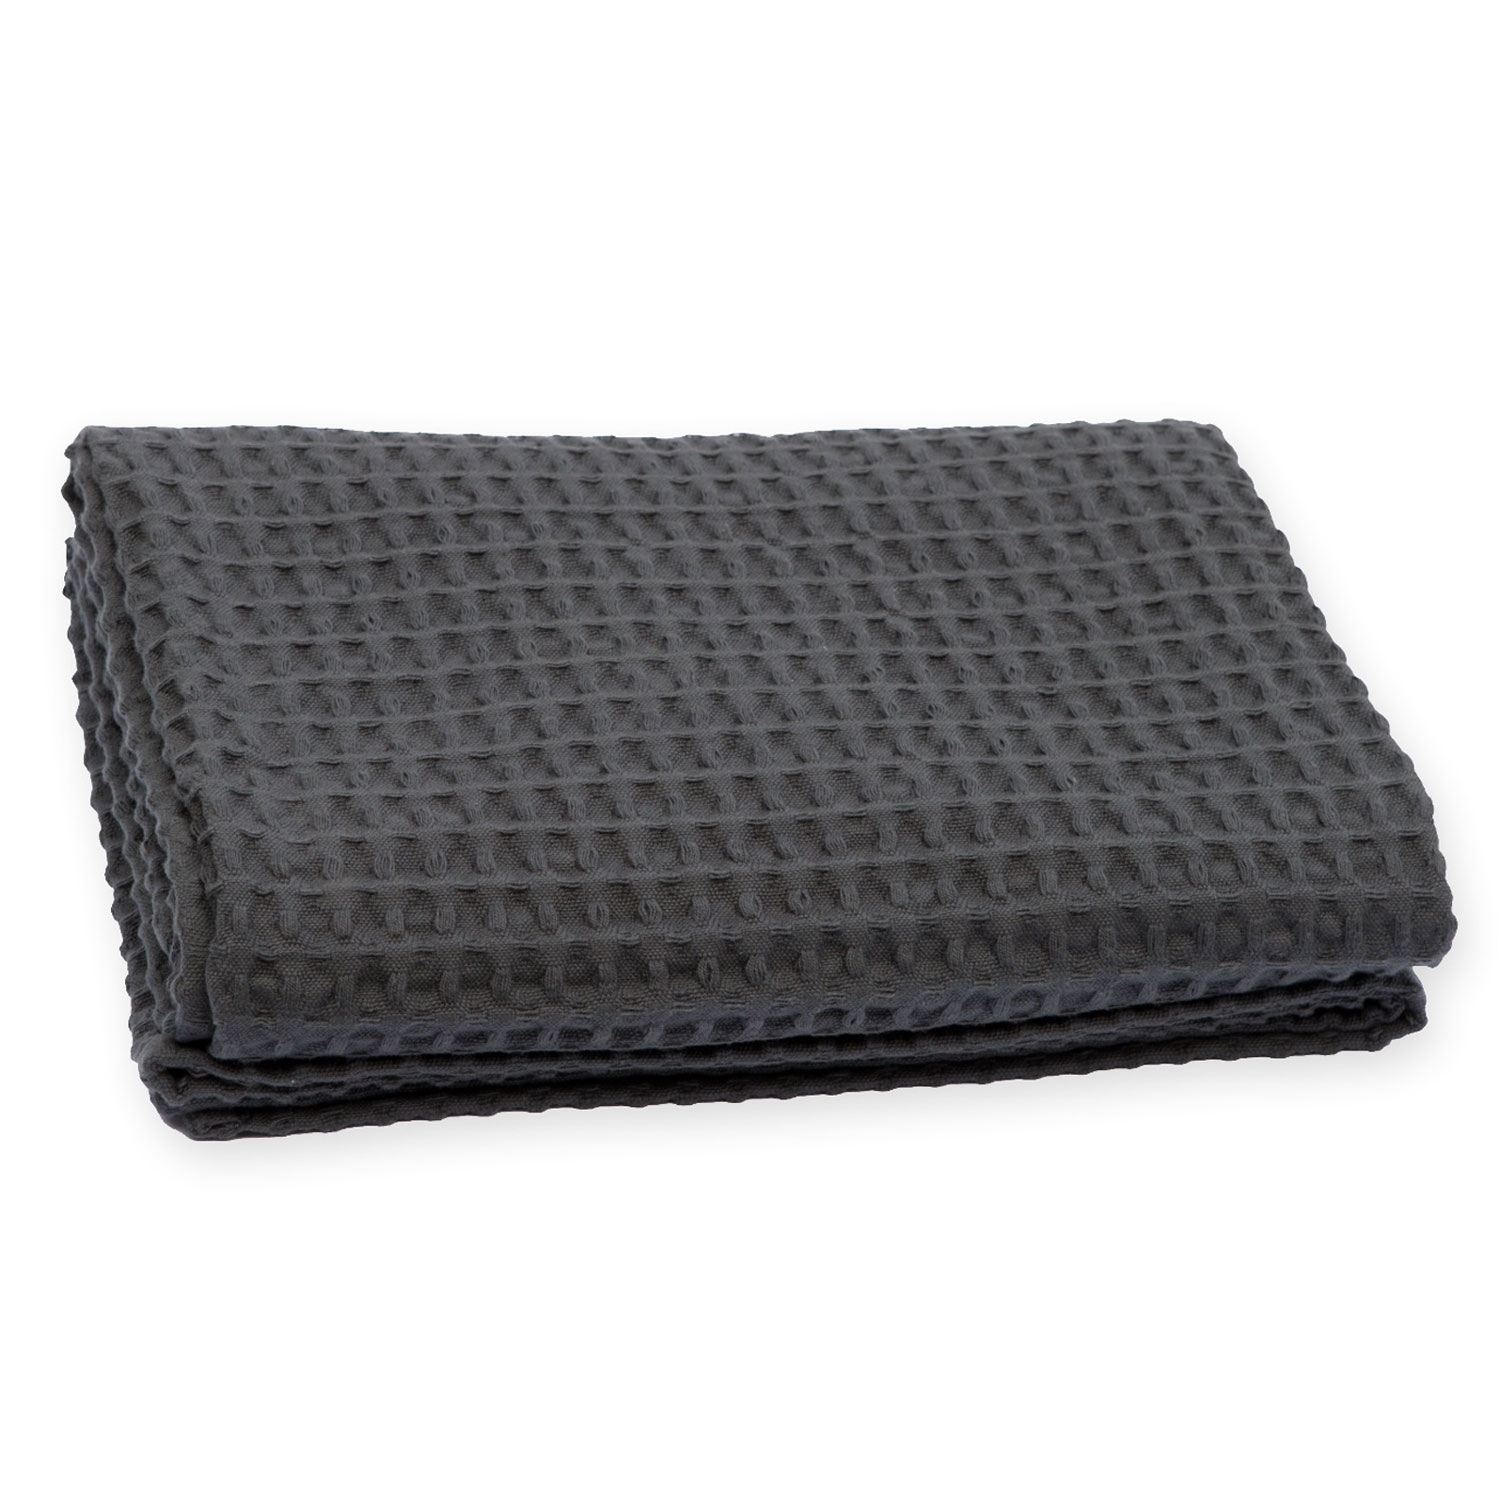 7000-Big_Waffle_Towel_Blanket-Dark_Grey-100x150-cm-FOLDED2-WEB1